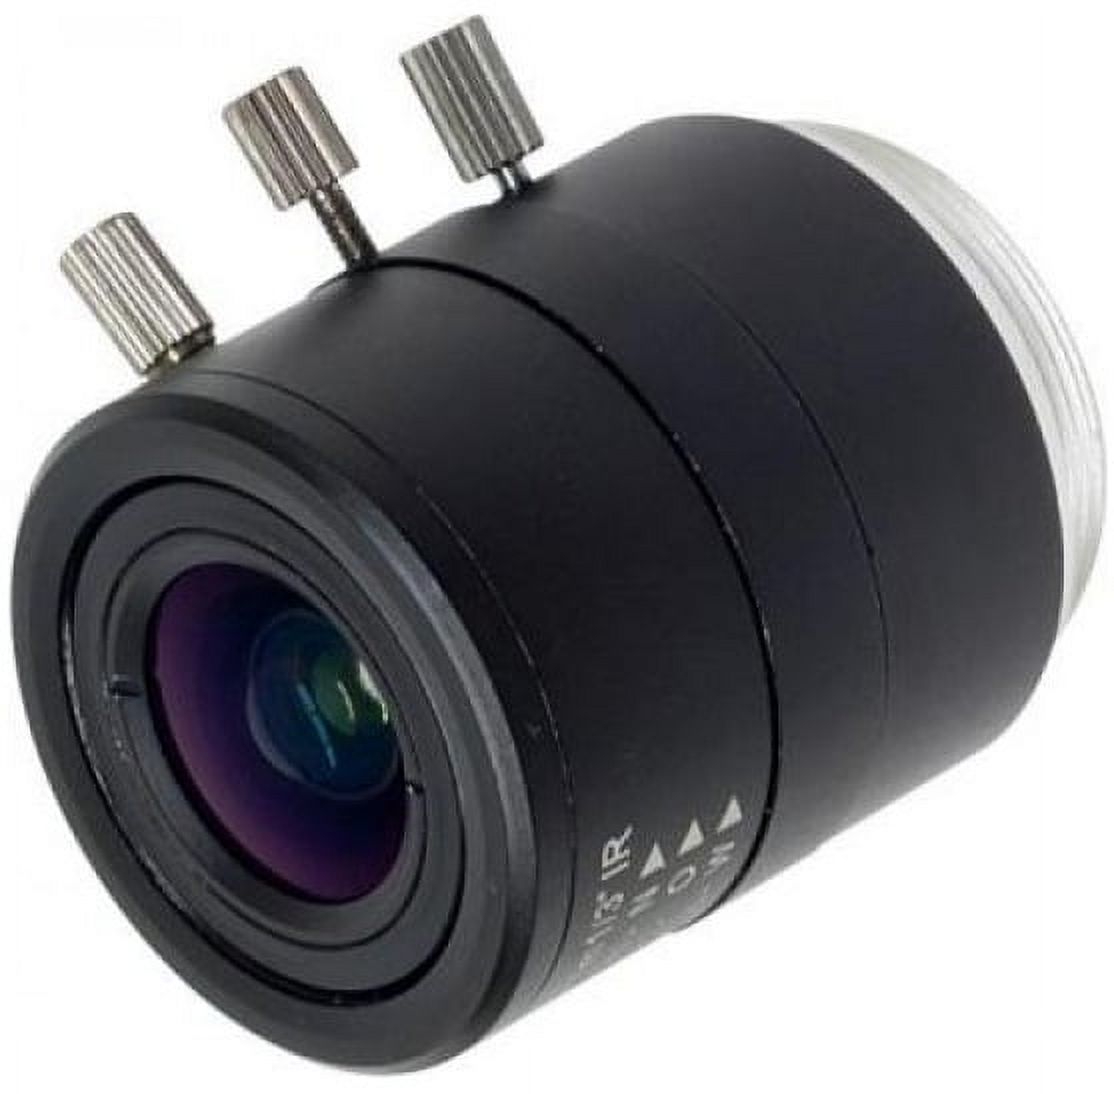 CCTV Security Camera Mega Pixel 3~12mm Manual Iris Varifocal Lens with IR Correction - image 1 of 2